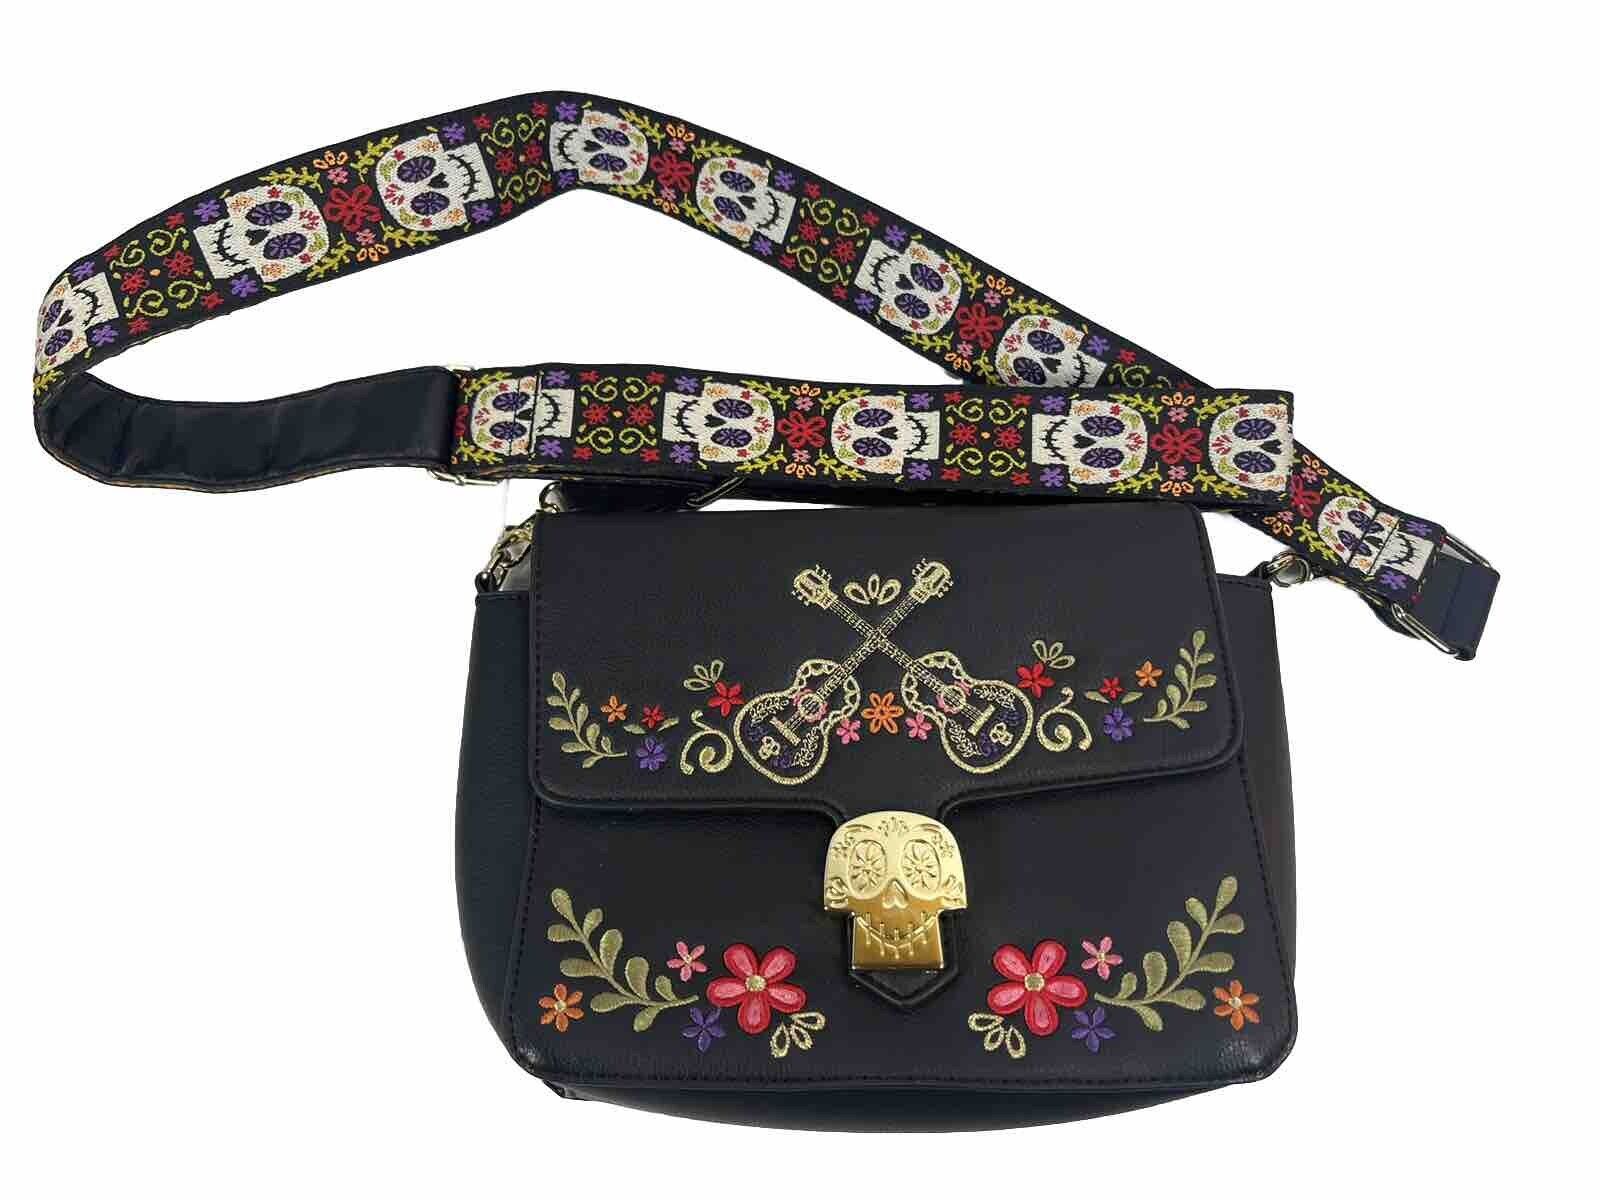 RARE HTF Disney Pixar Coco Embroidered Purse Handbag Crossbody Bag